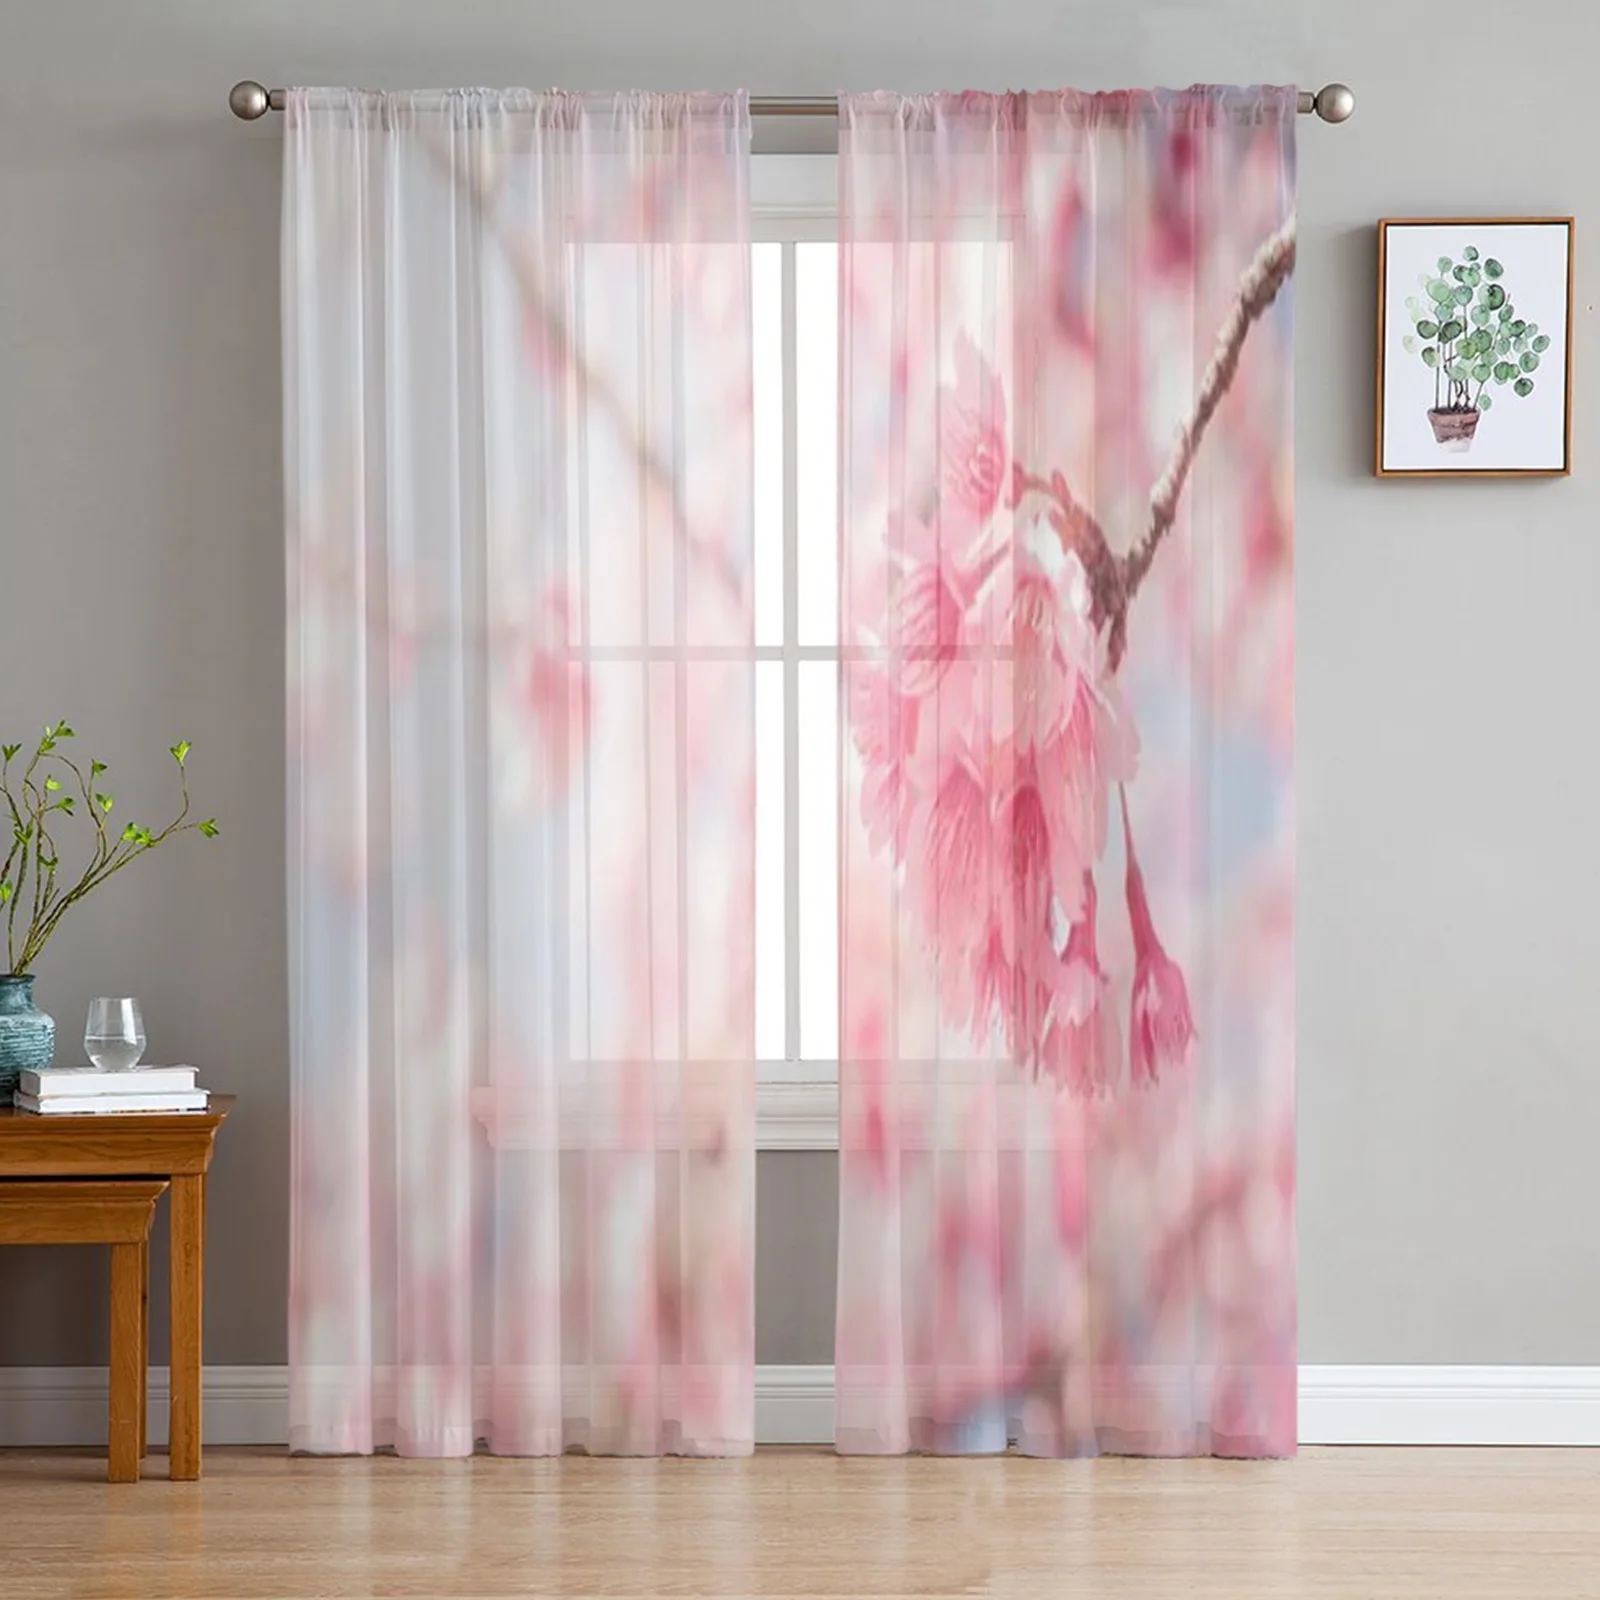 

Тюль с розовыми цветами вишни, прозрачные оконные шторы для гостиной, спальни, современные драпировки из органзы, декоративные занавески